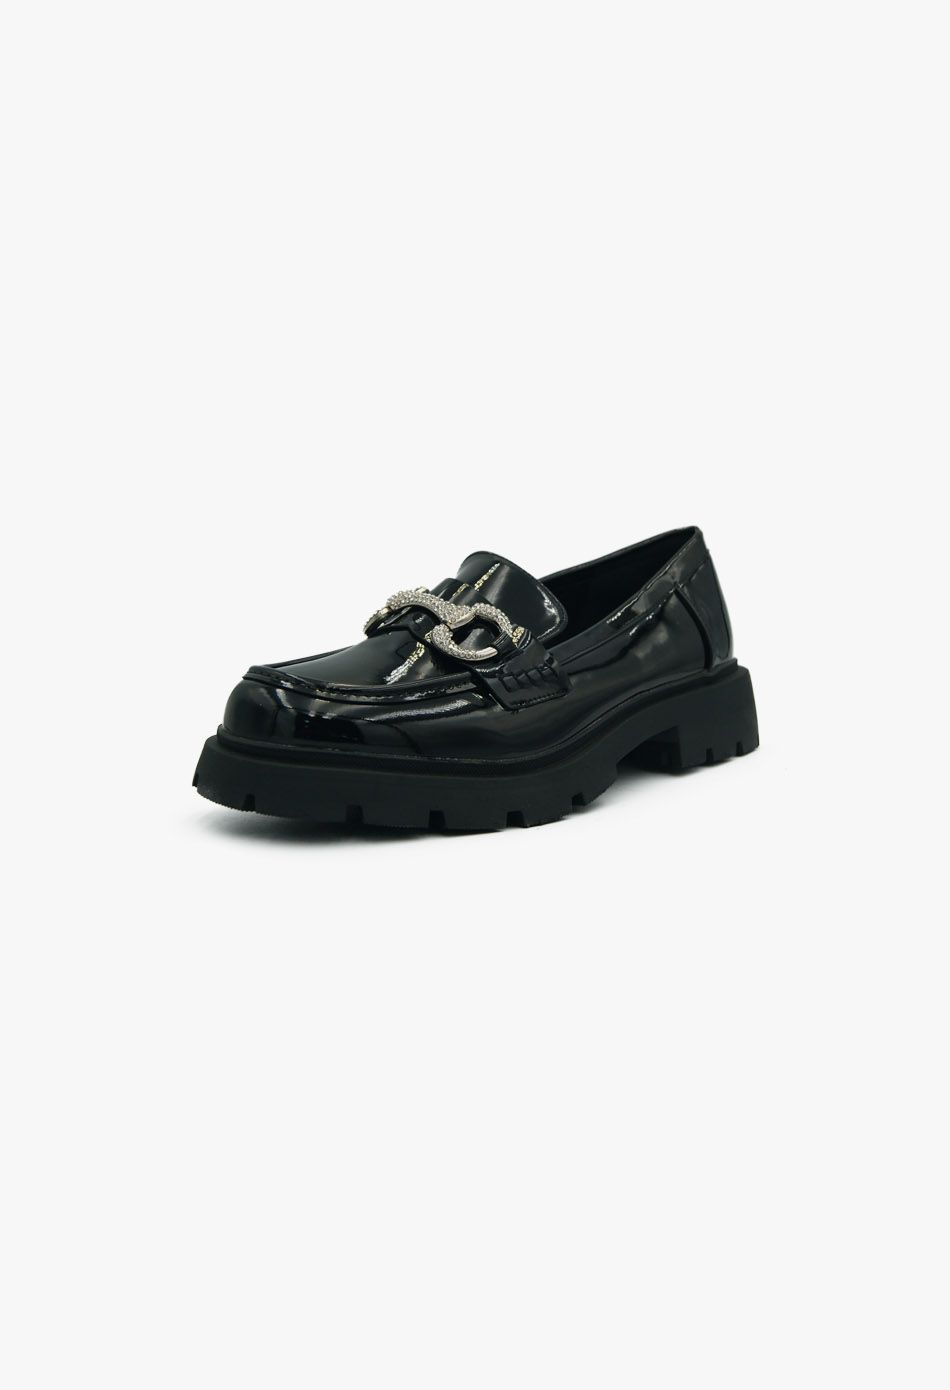 Γυναικεία Loafers σε Μαύρο Χρώμα Λουστρίνι με Strass / LL-1346-black Χαμηλά Παπούτσια joya.gr